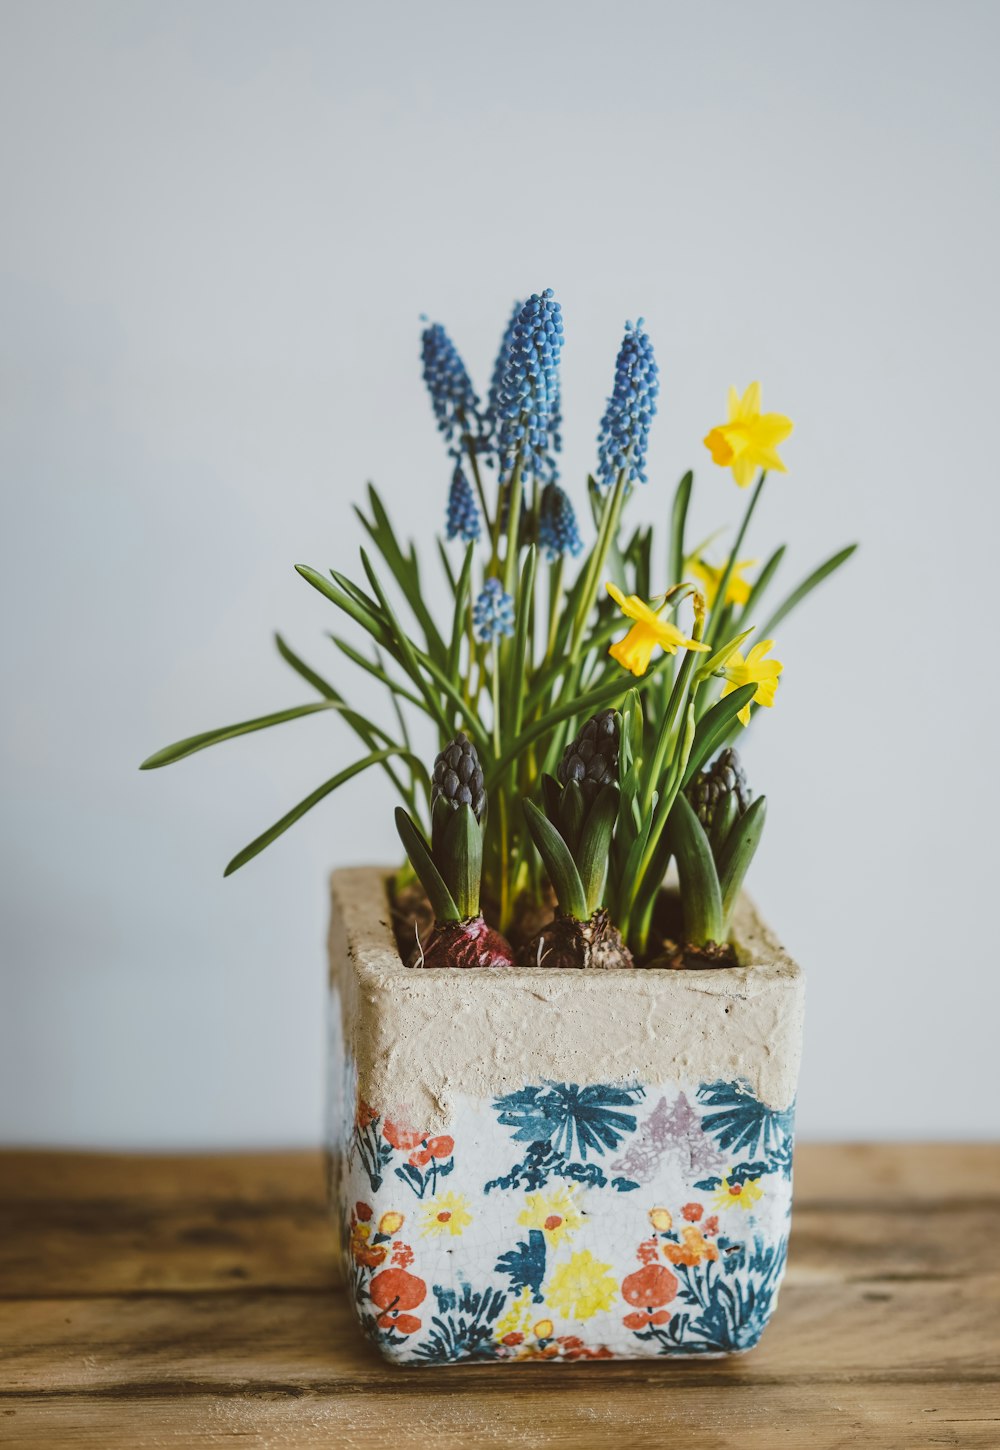 fiori gialli e blu sul vaso